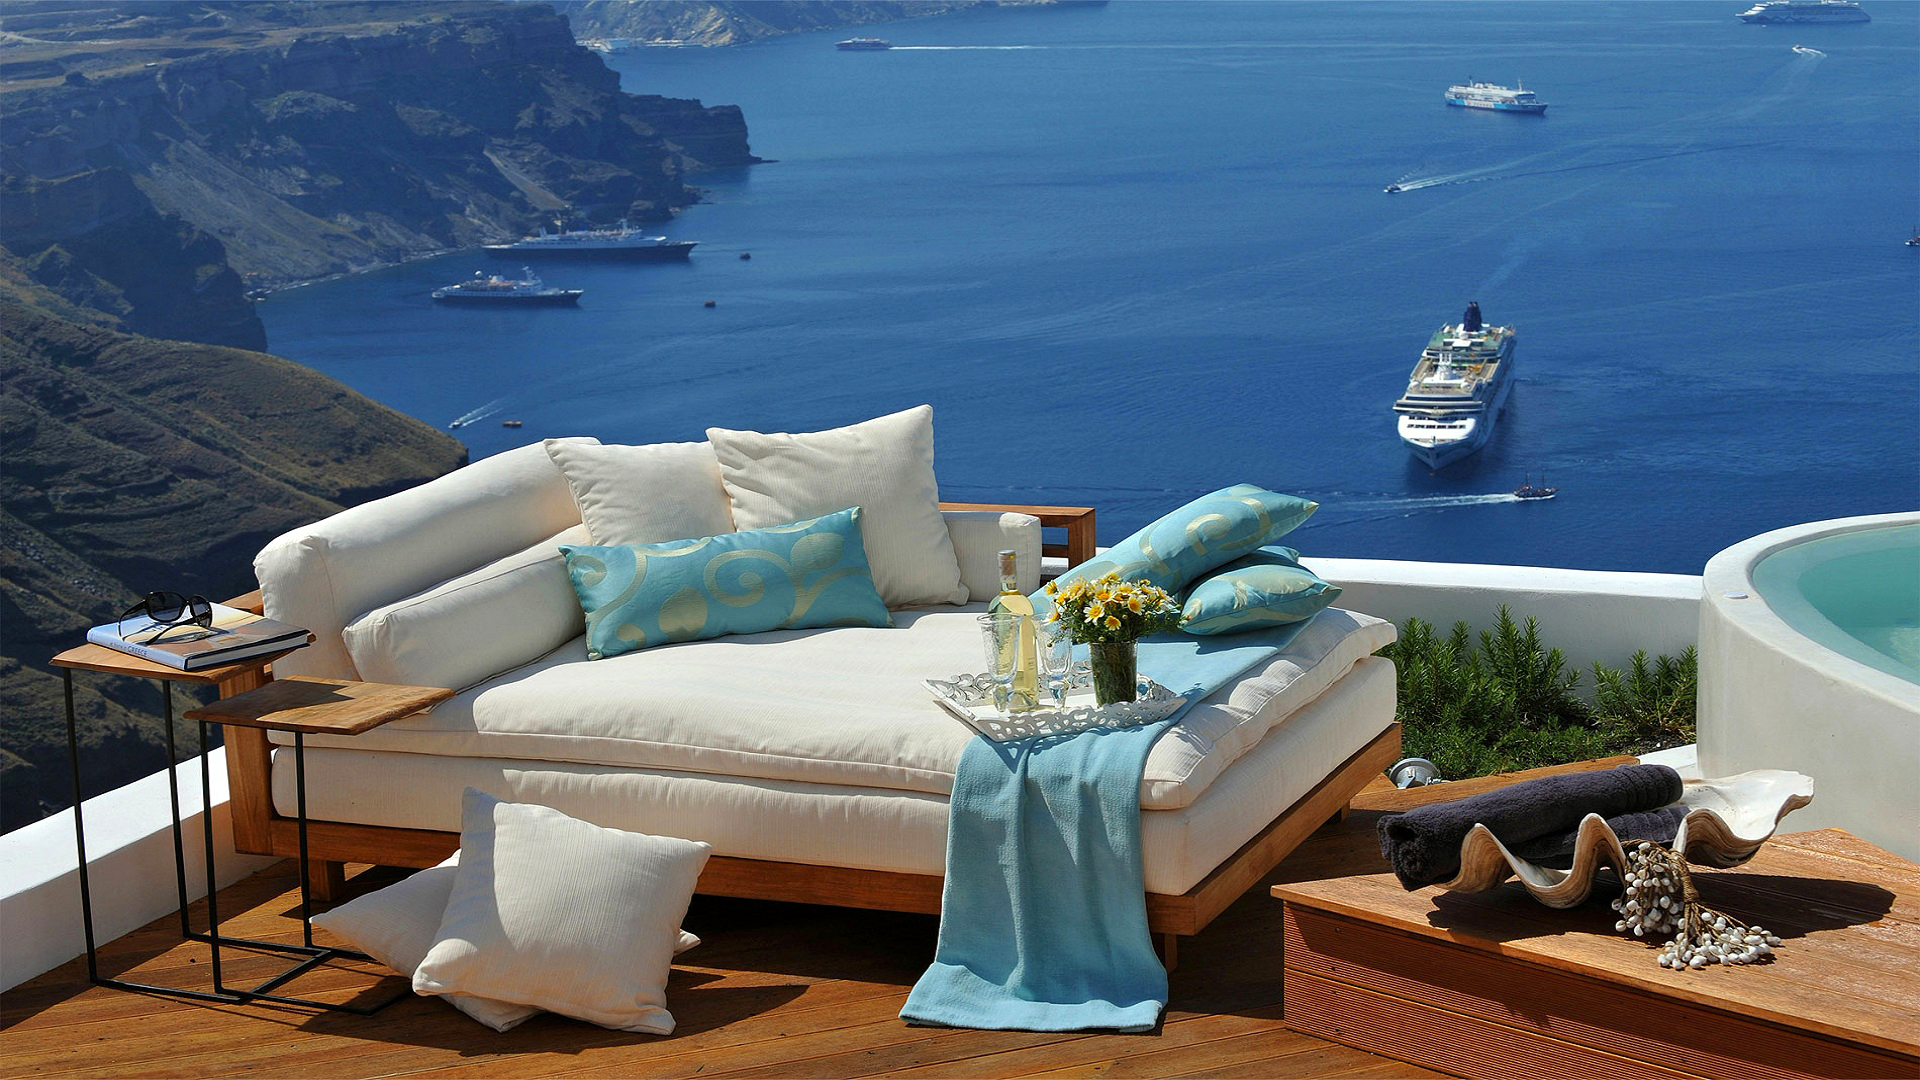 sofa, ocean, photography, holiday, cruise ship, cushion, greece, lounge, pillow, santorini, ship